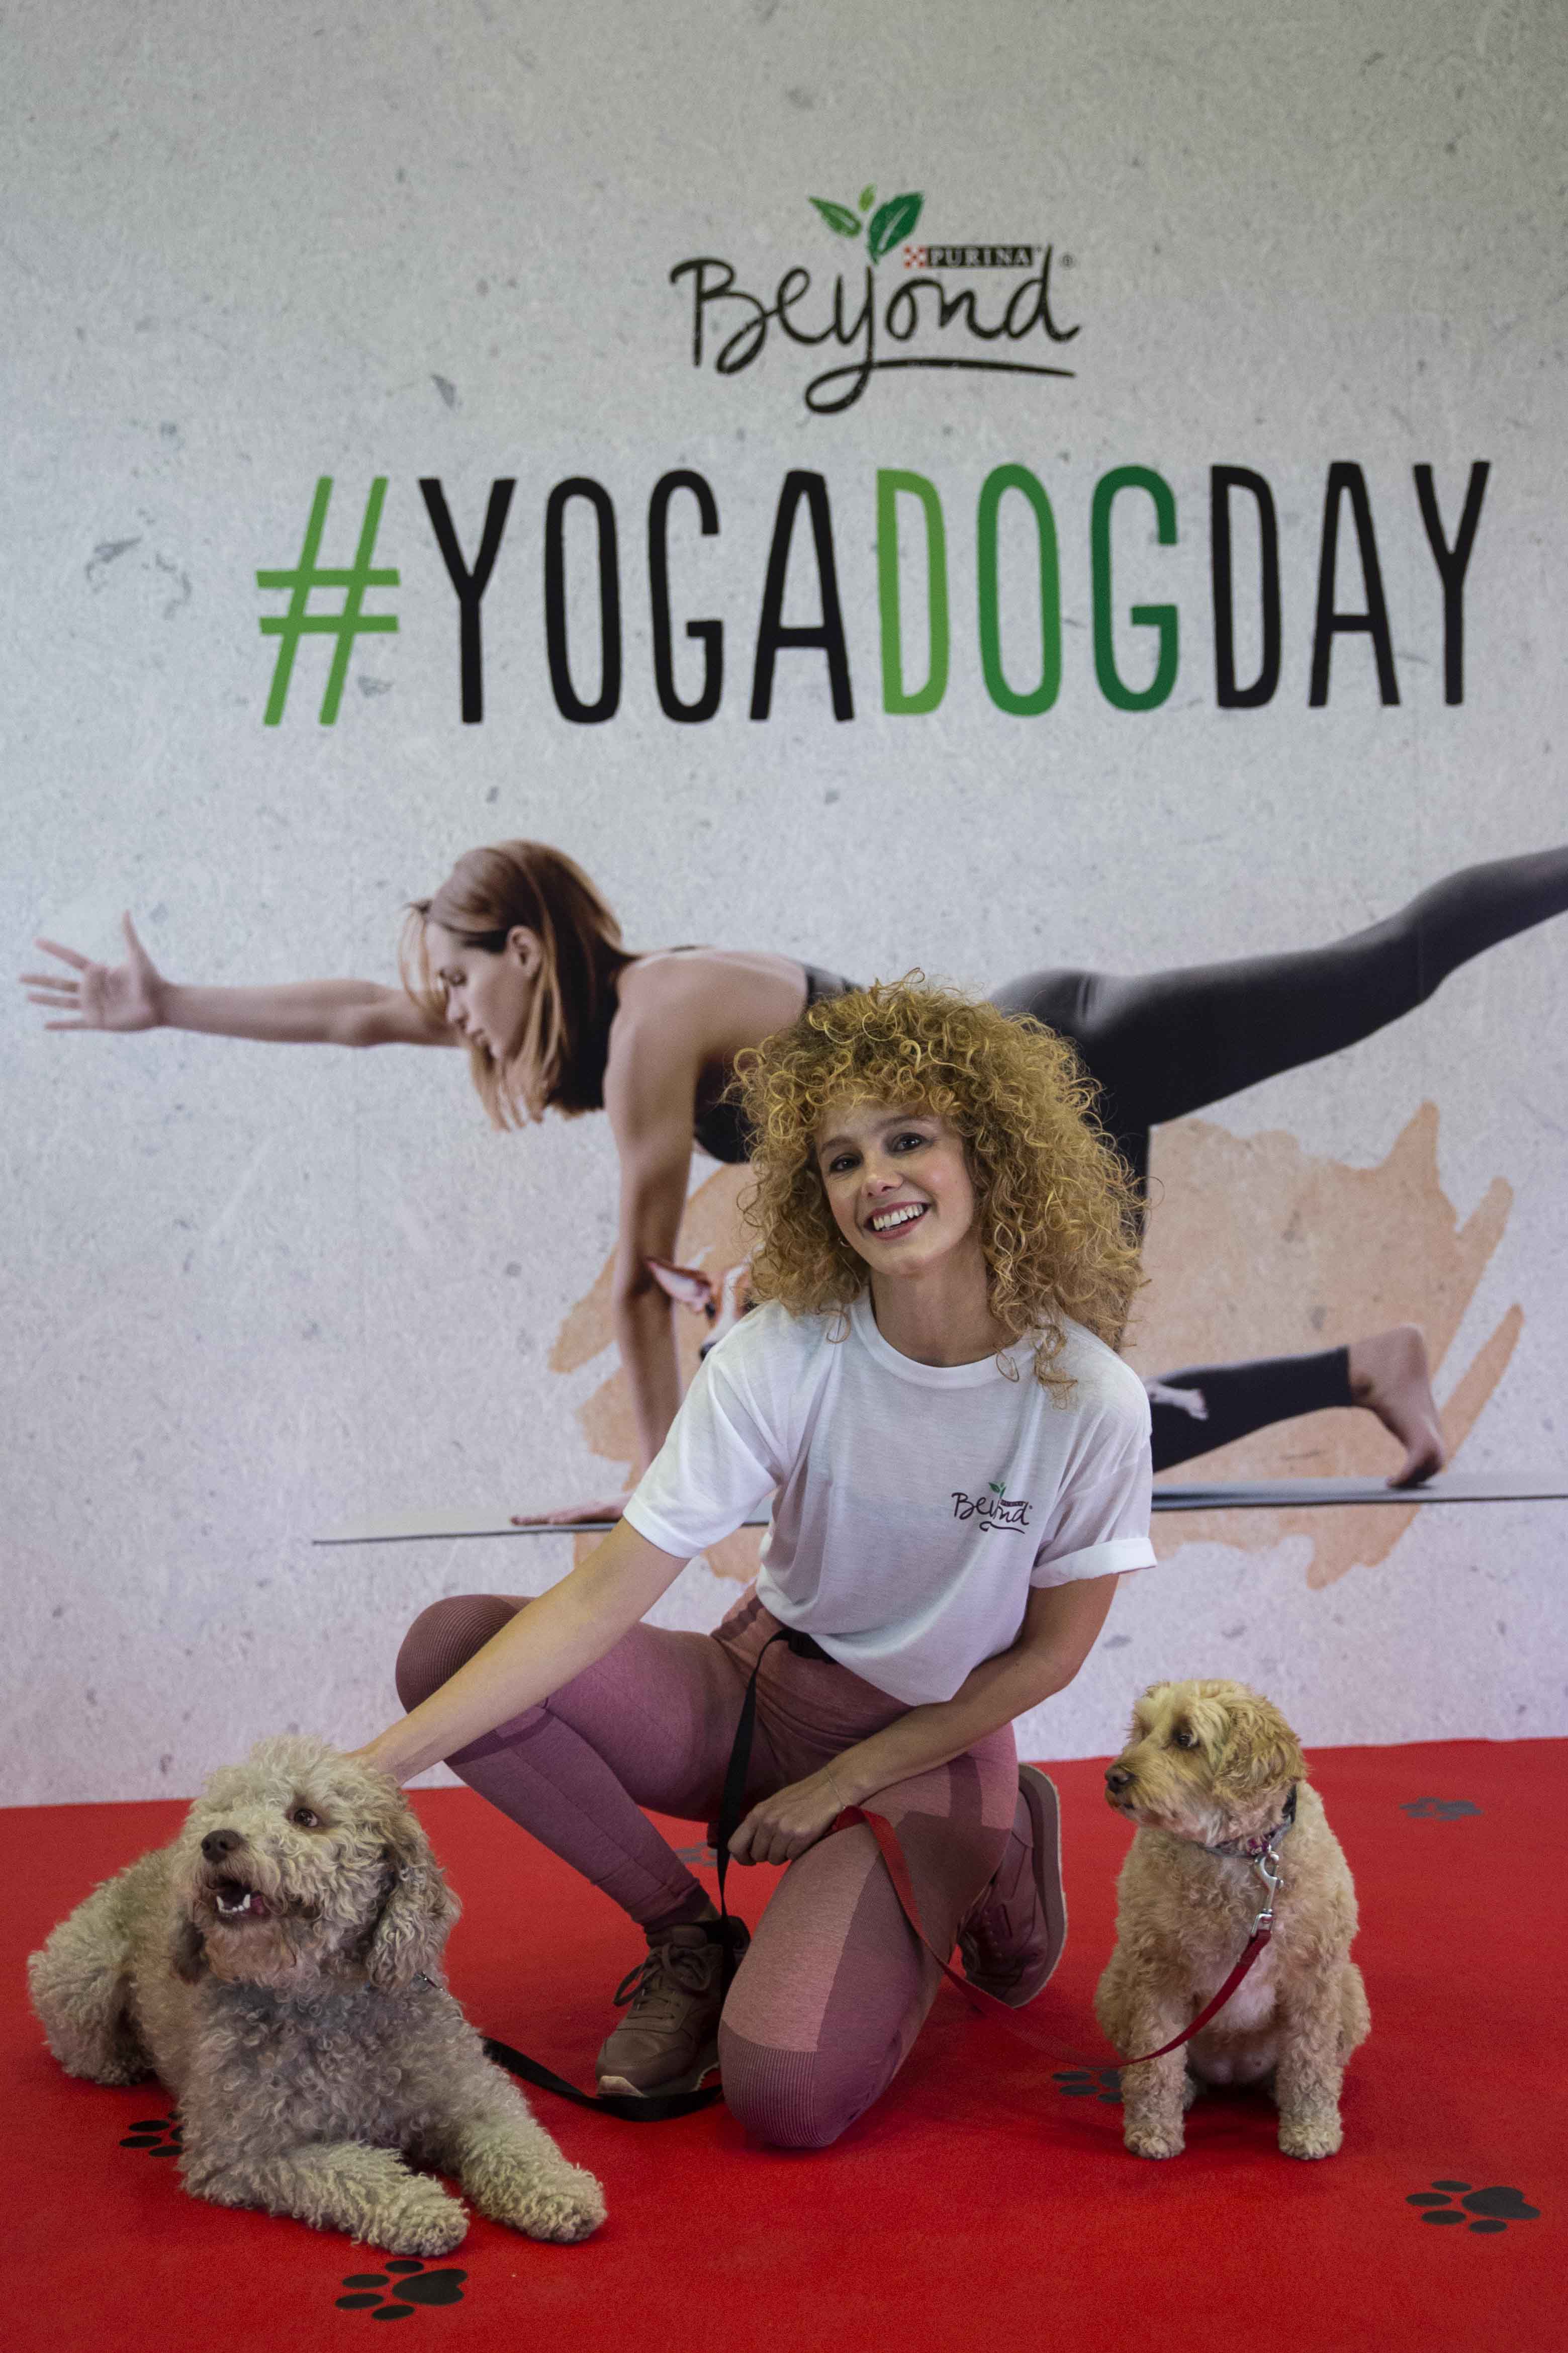 ¿Qué hacen tantos perros practicando yoga en la Gran Vía de Madrid?